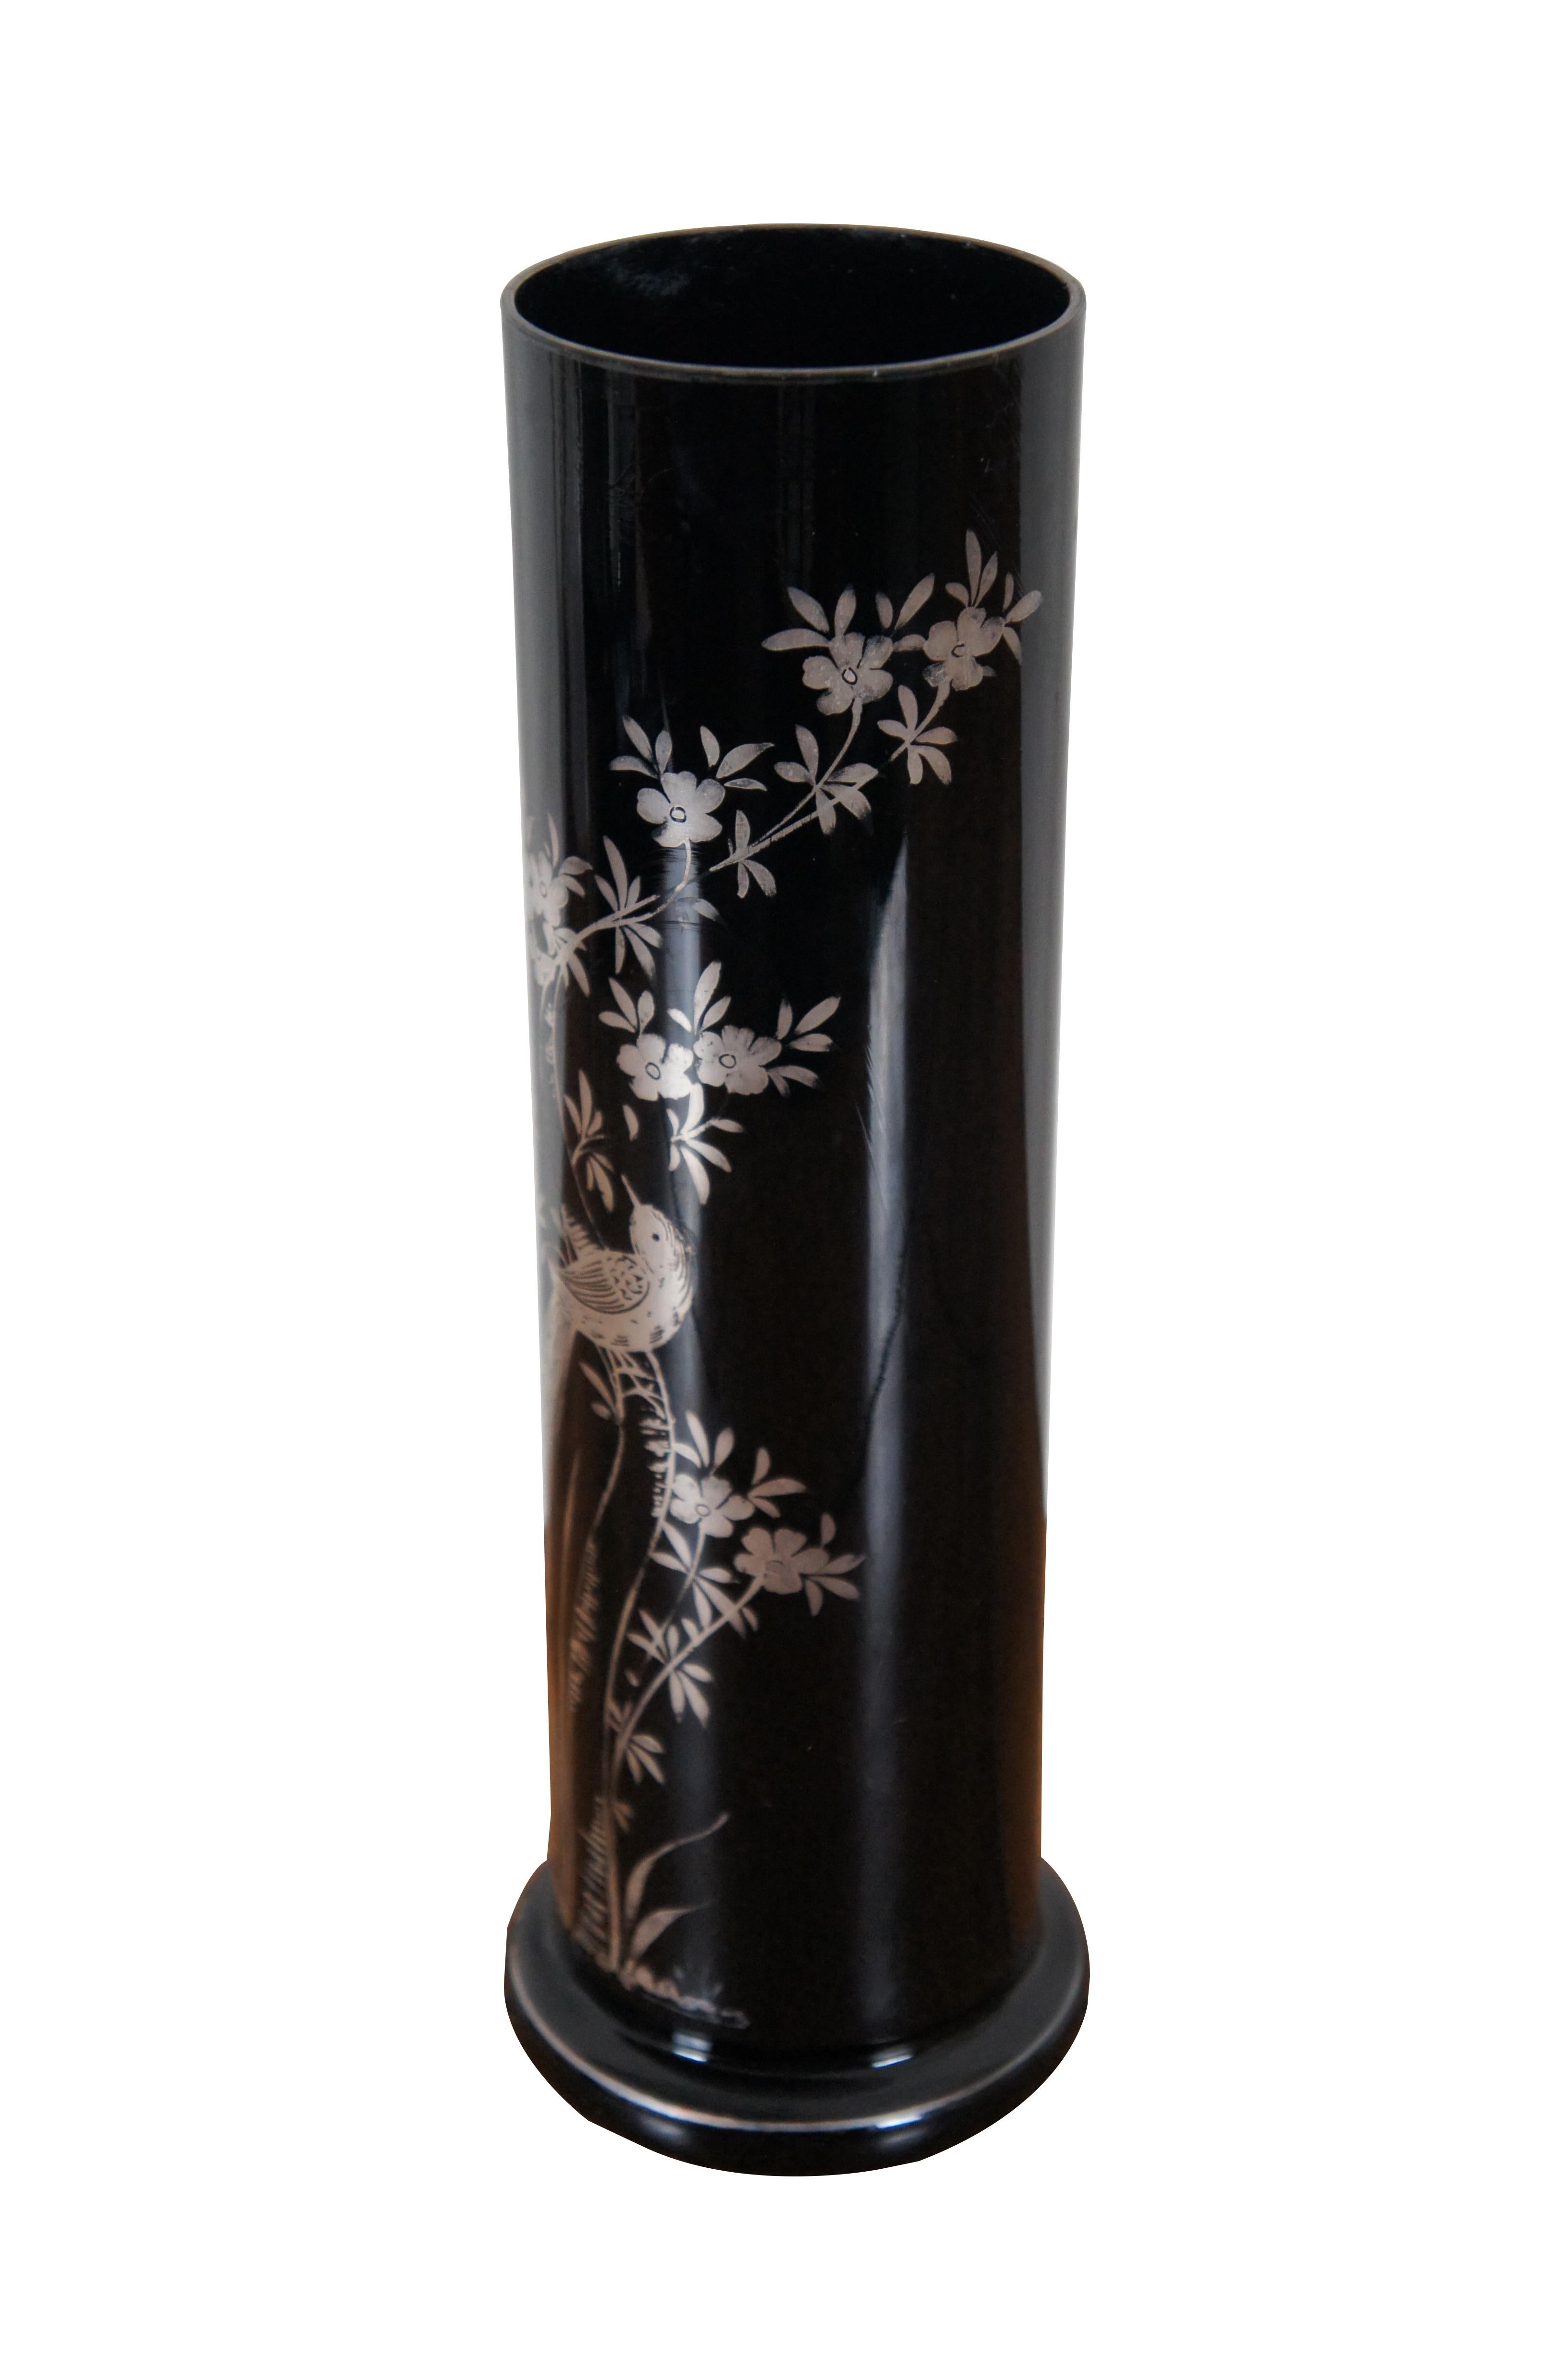 Ancien vase à bourgeons cylindrique en verre noir tchèque / bohémien avec une scène argentée avec un oiseau et des fleurs.

Dimensions :
3,75